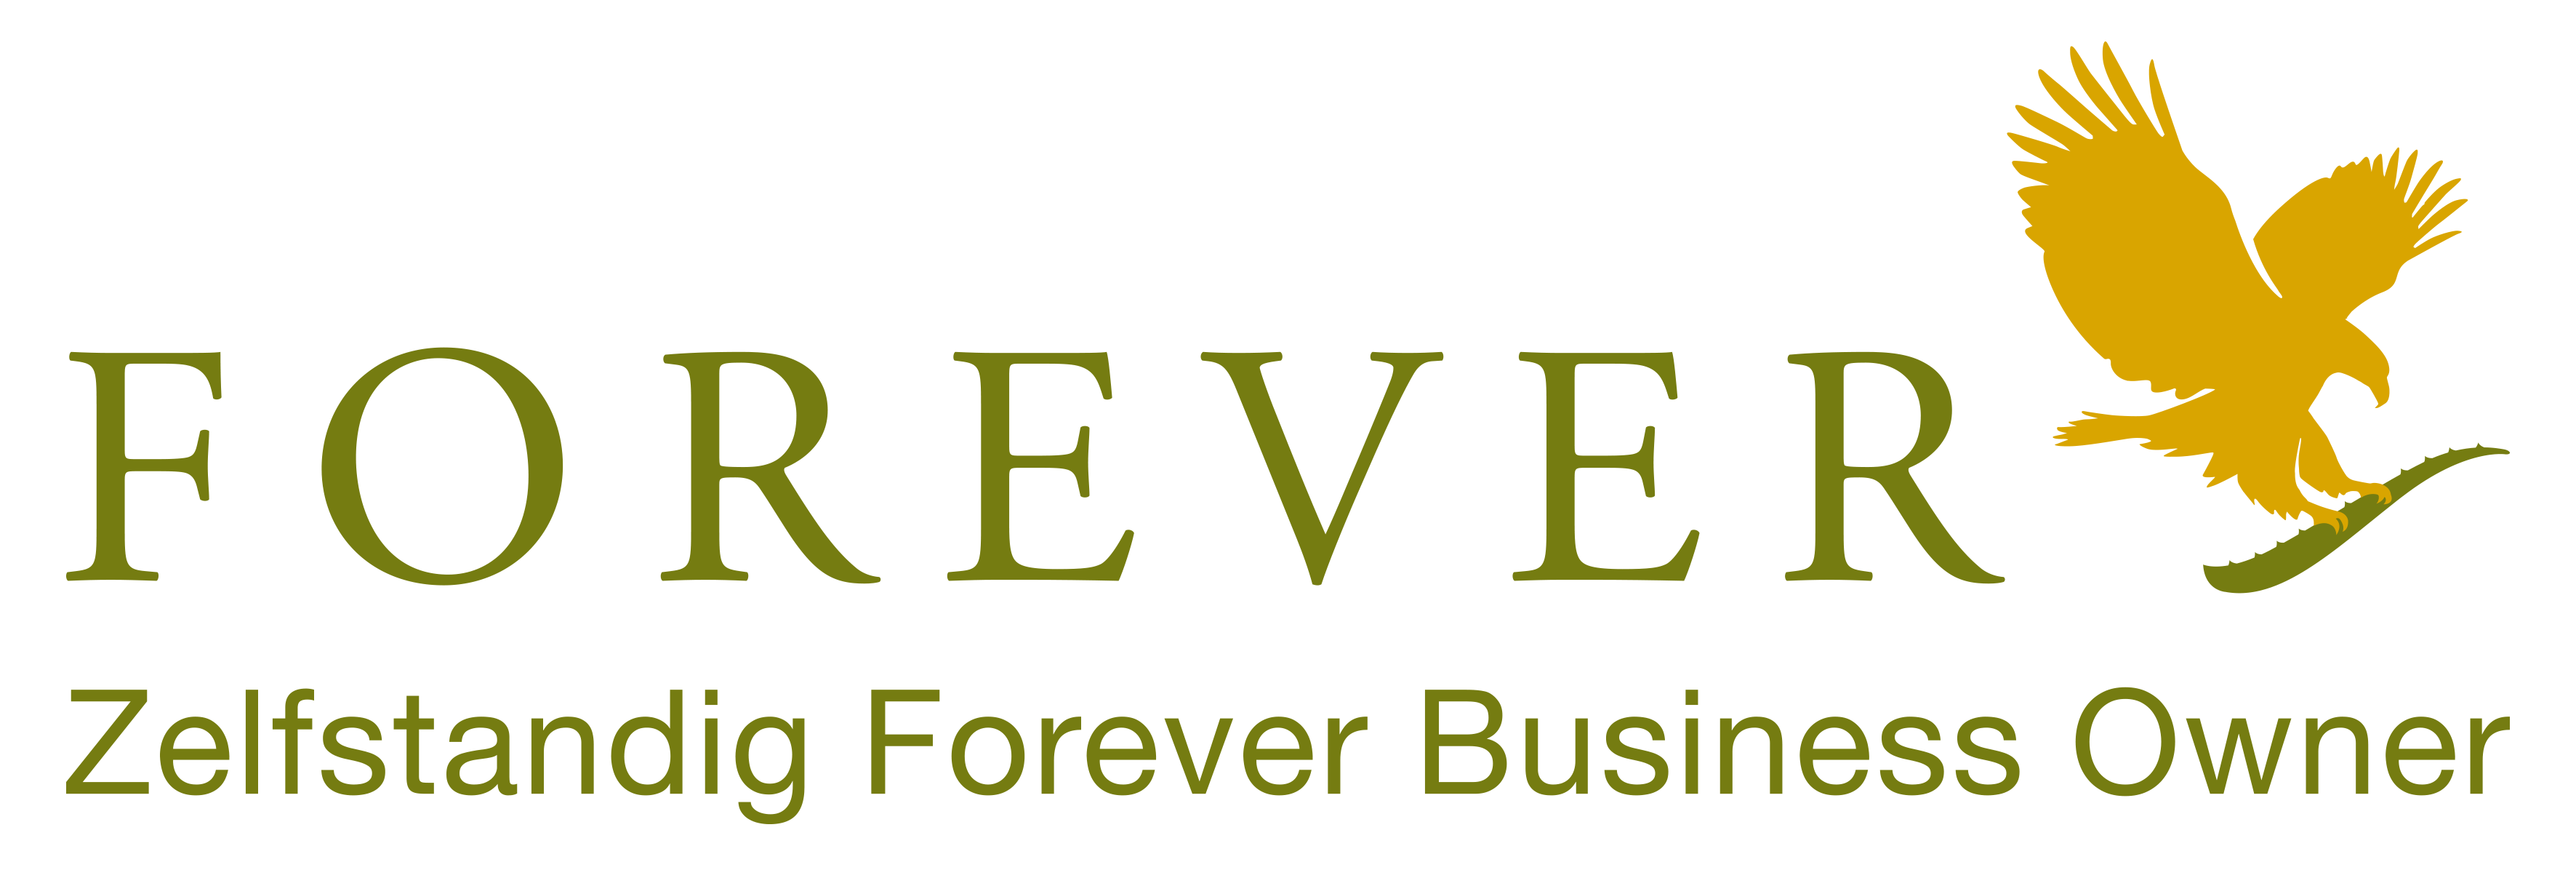 Forever Aloe vera liefert Forever-Produkte an Kunden in Benelus und Frankreich als unabhängiger Geschäftsinhaber für Forever Living. Kaufen Sie Ihre Produkte auf Forever Living in Belgien, den Niederlanden, Luxemburg und Frankreich